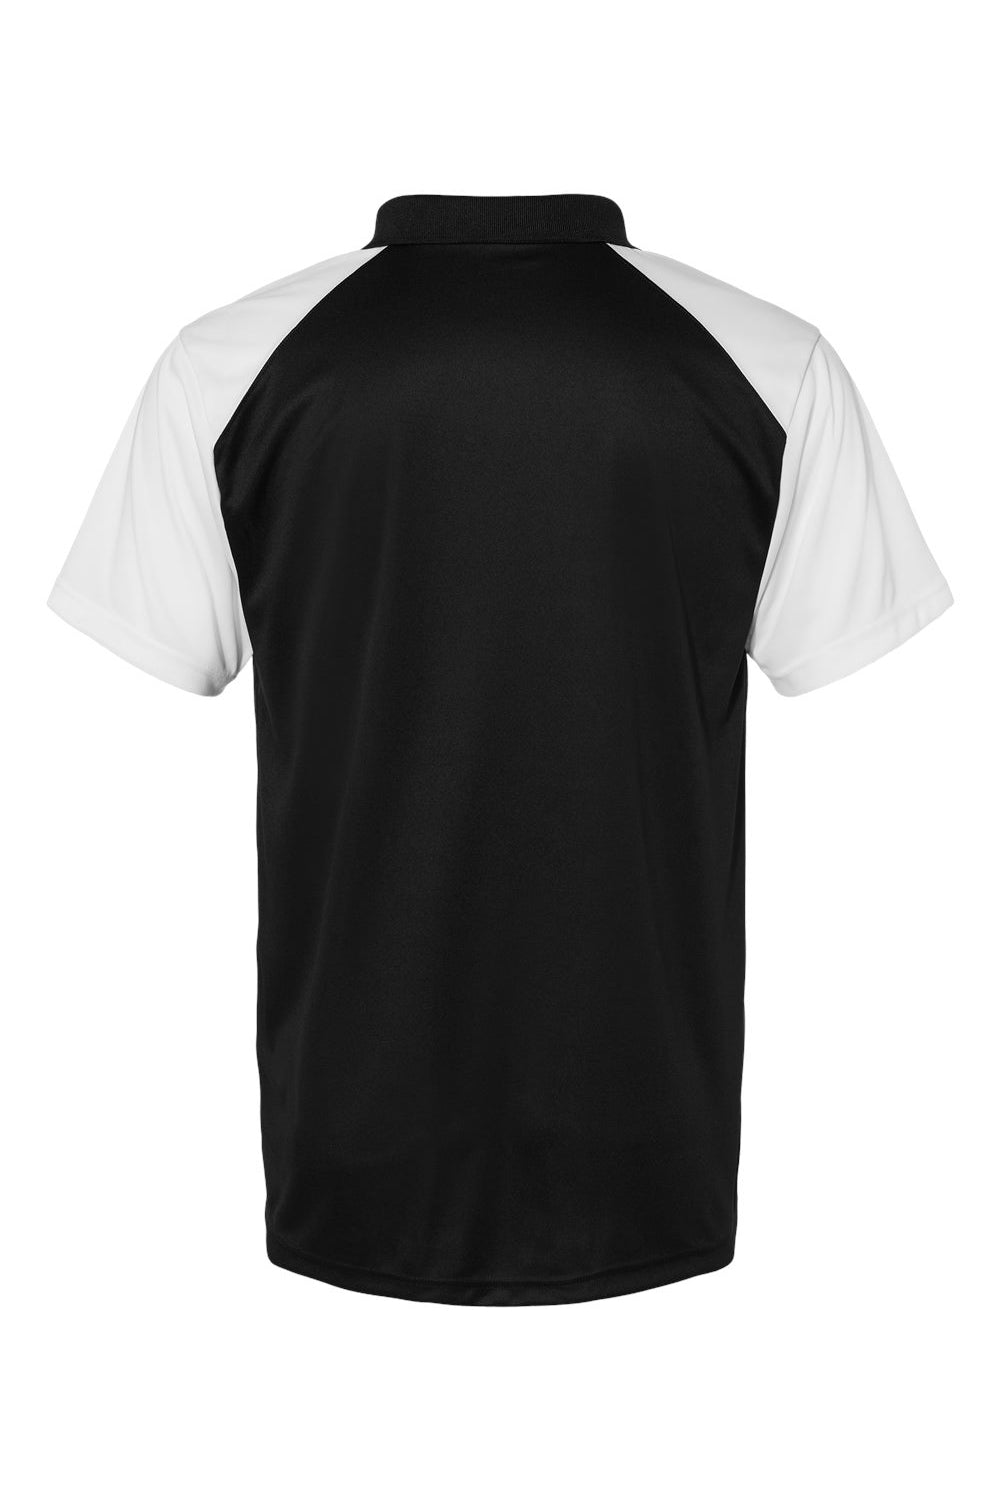 C2 Sport 5903 Mens Moisture Wicking Short Sleeve Polo Shirt Black/White Flat Back